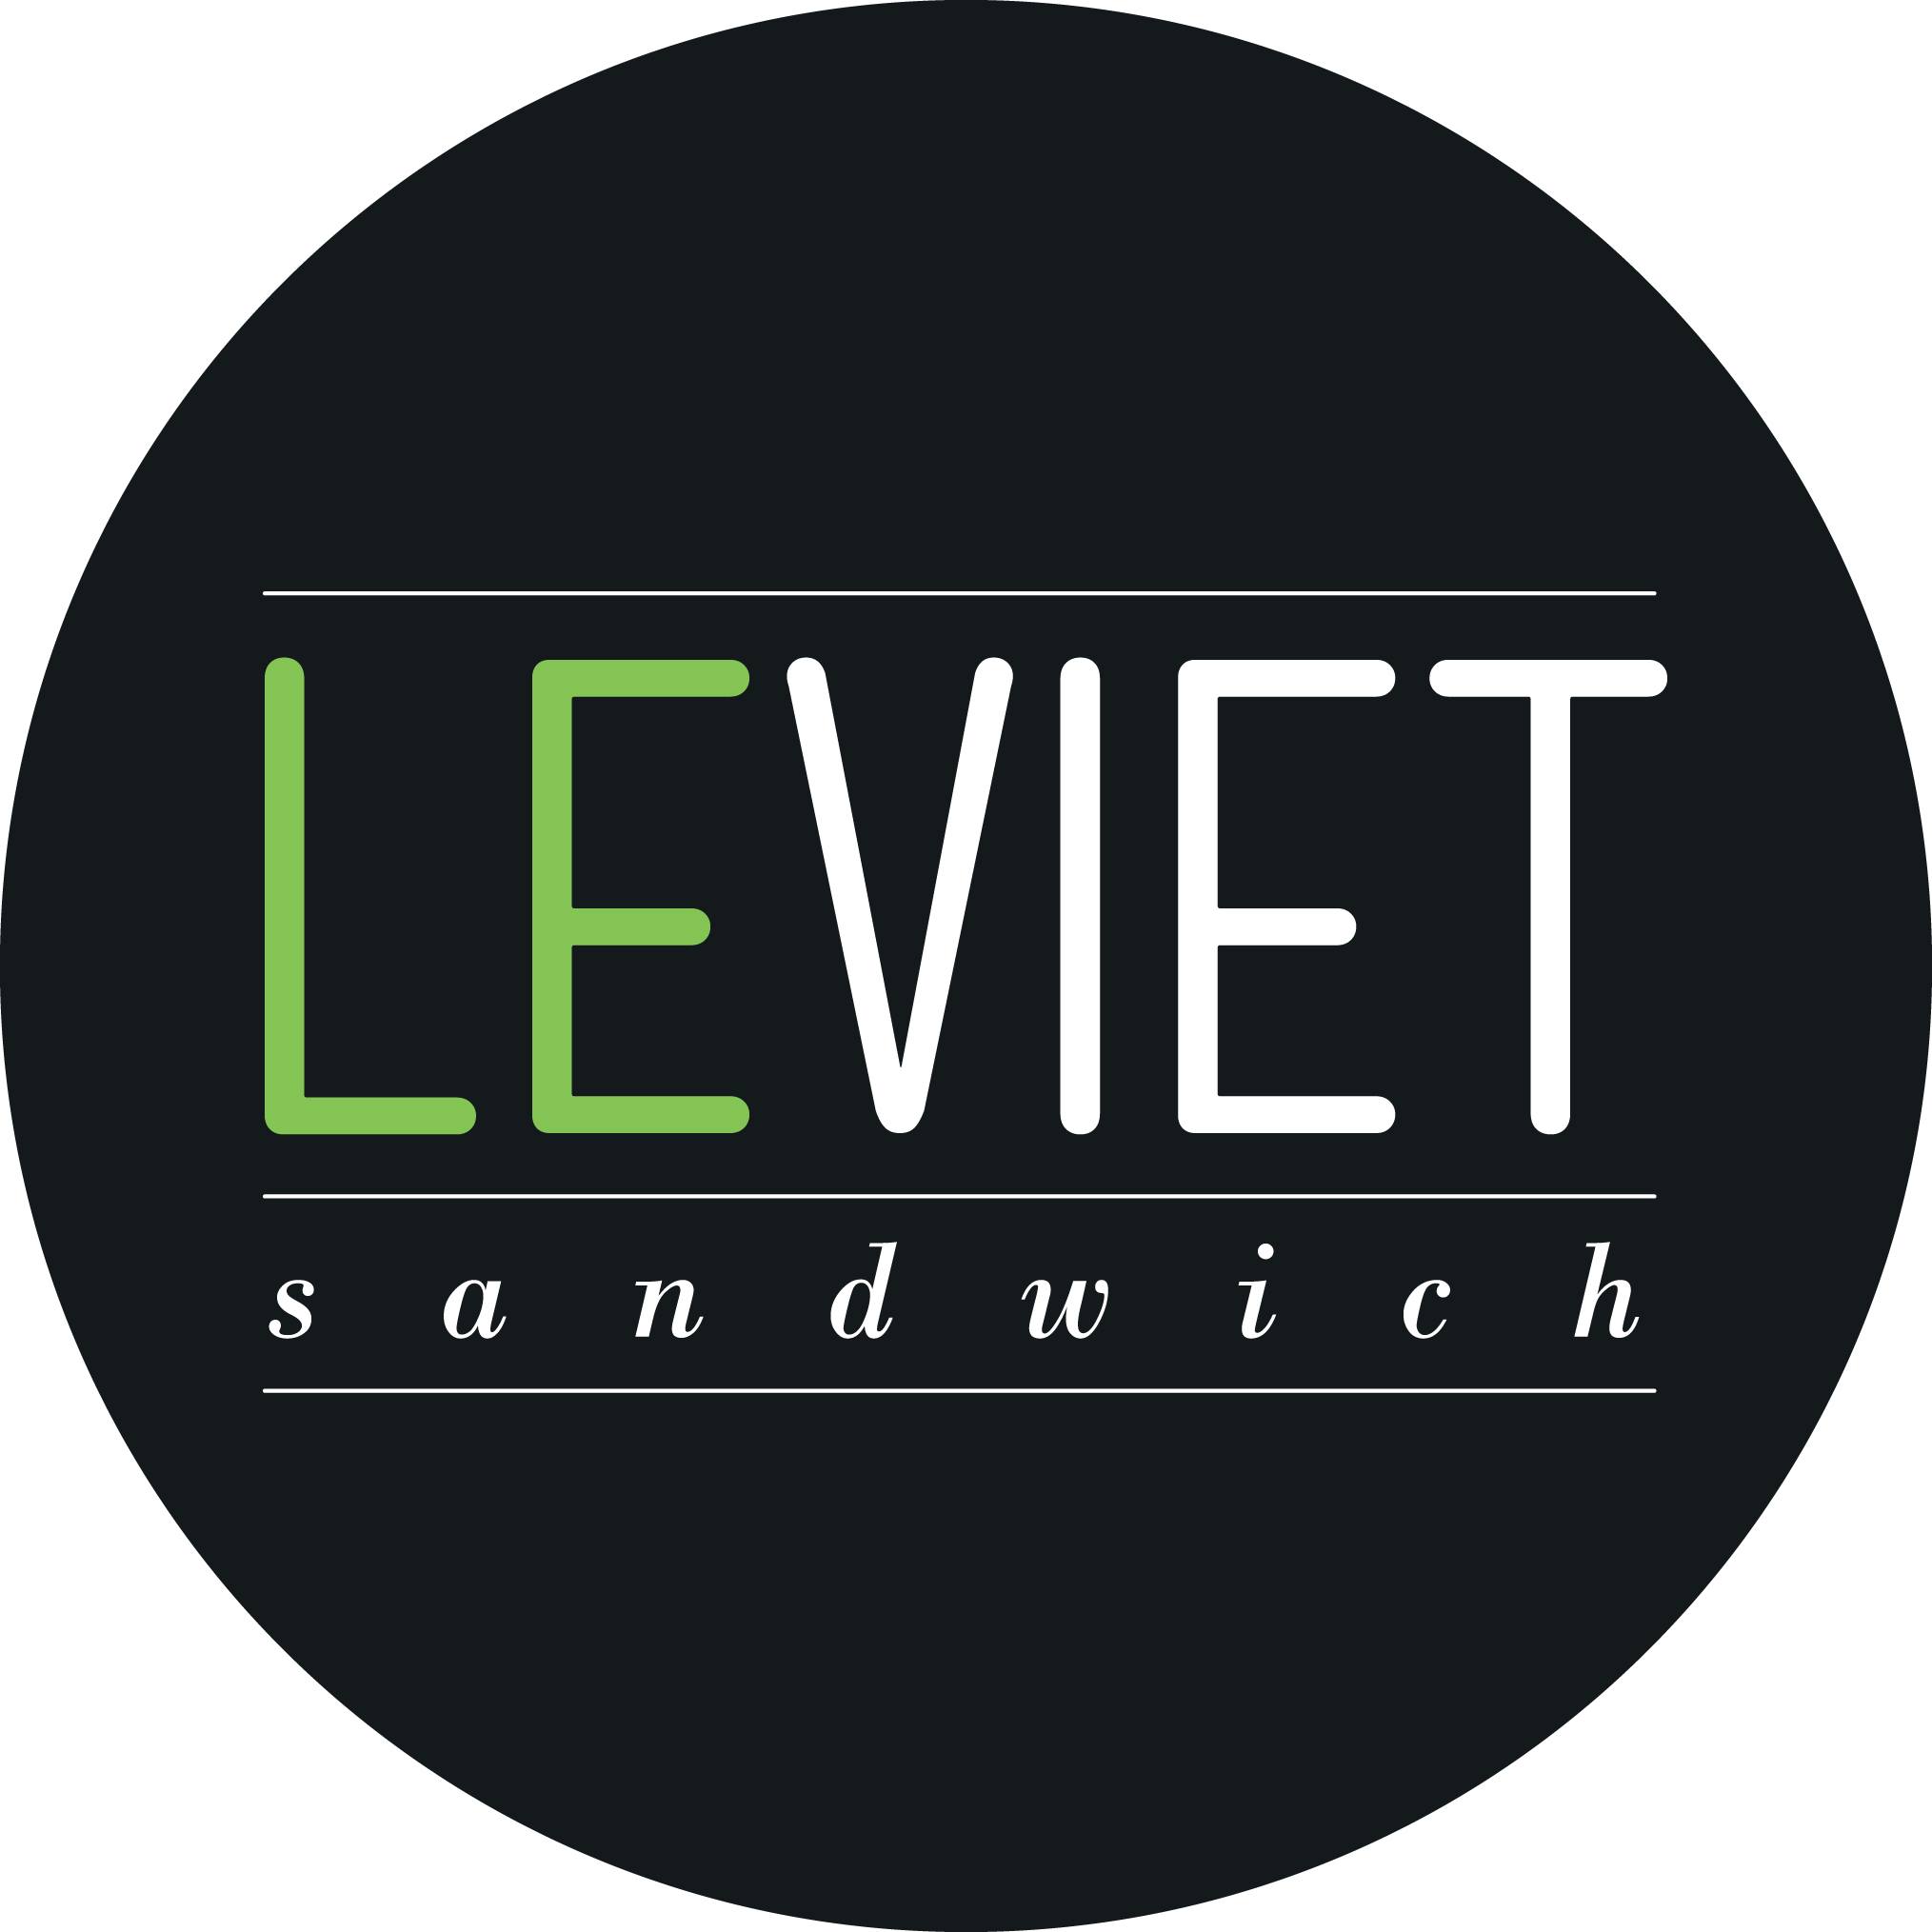 Le Viet Sandwich